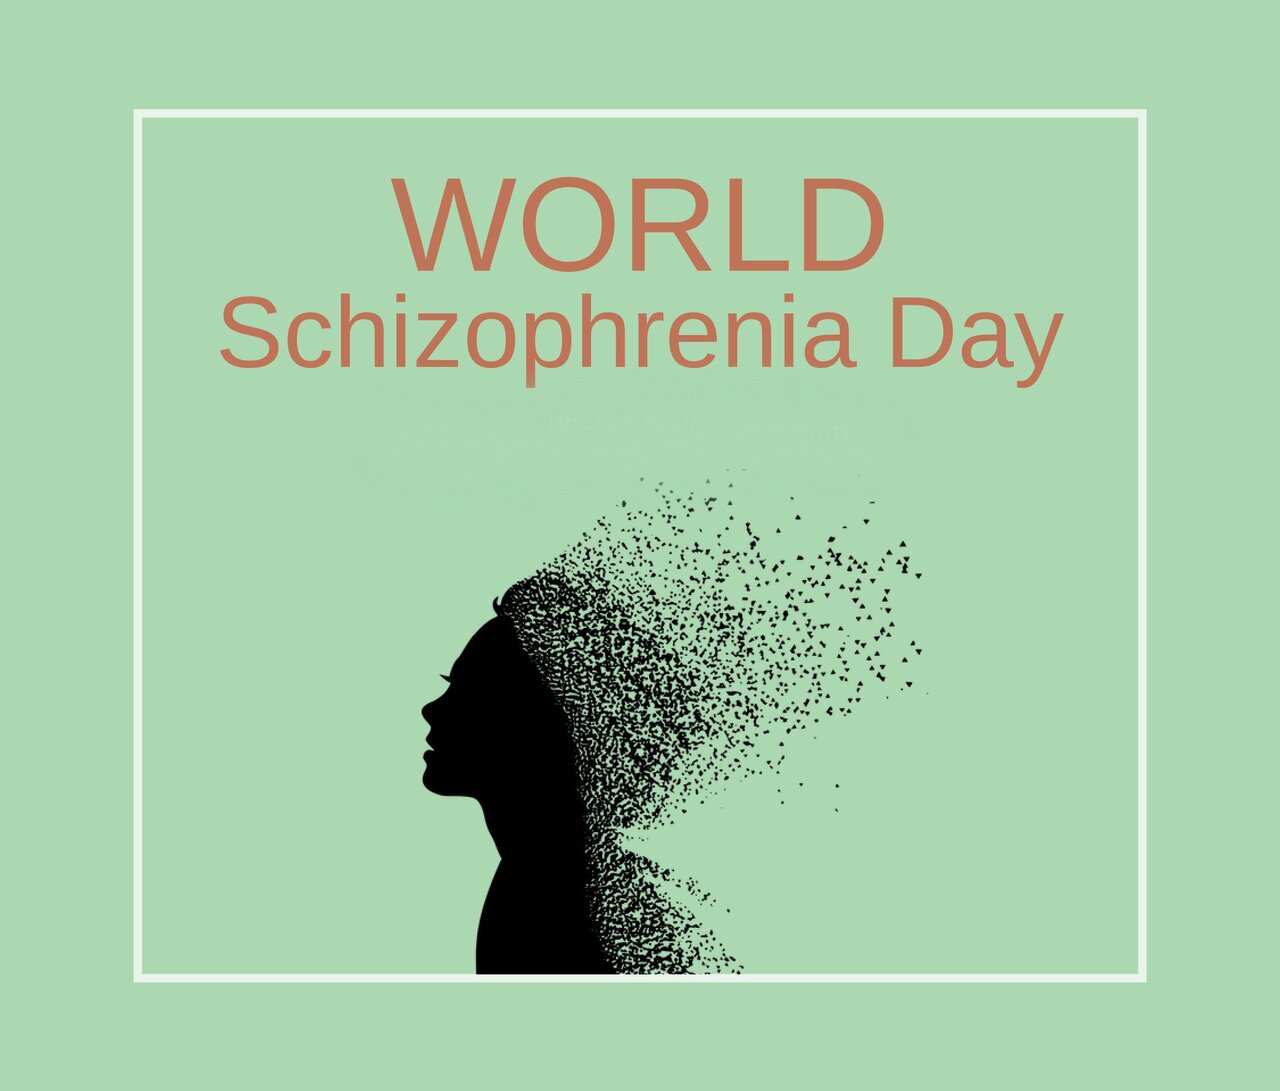 روز جهانی اسکیزوفرنی ۱۴۰۳ + تاریخچه و پوستر World Schizophrenia Day